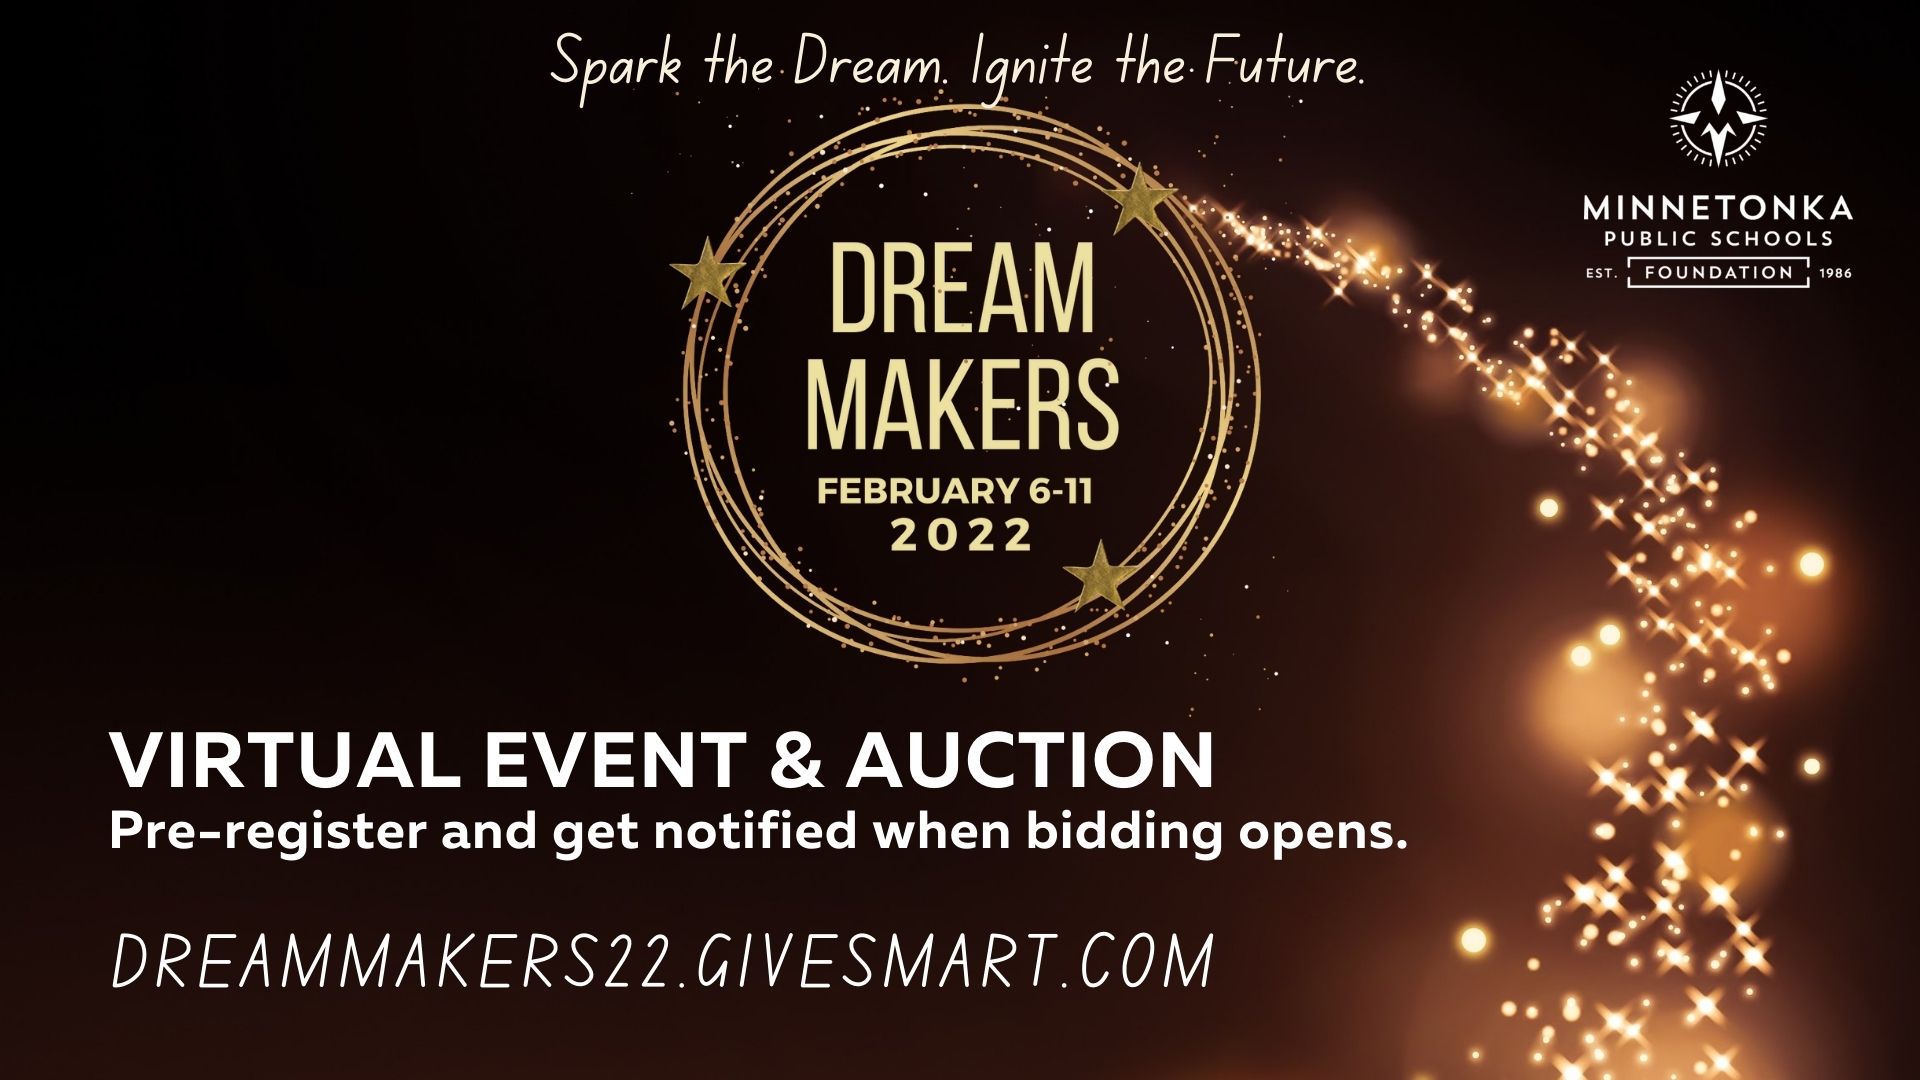 Dream Makers 2022 - DreamMakers22.givesmart.com